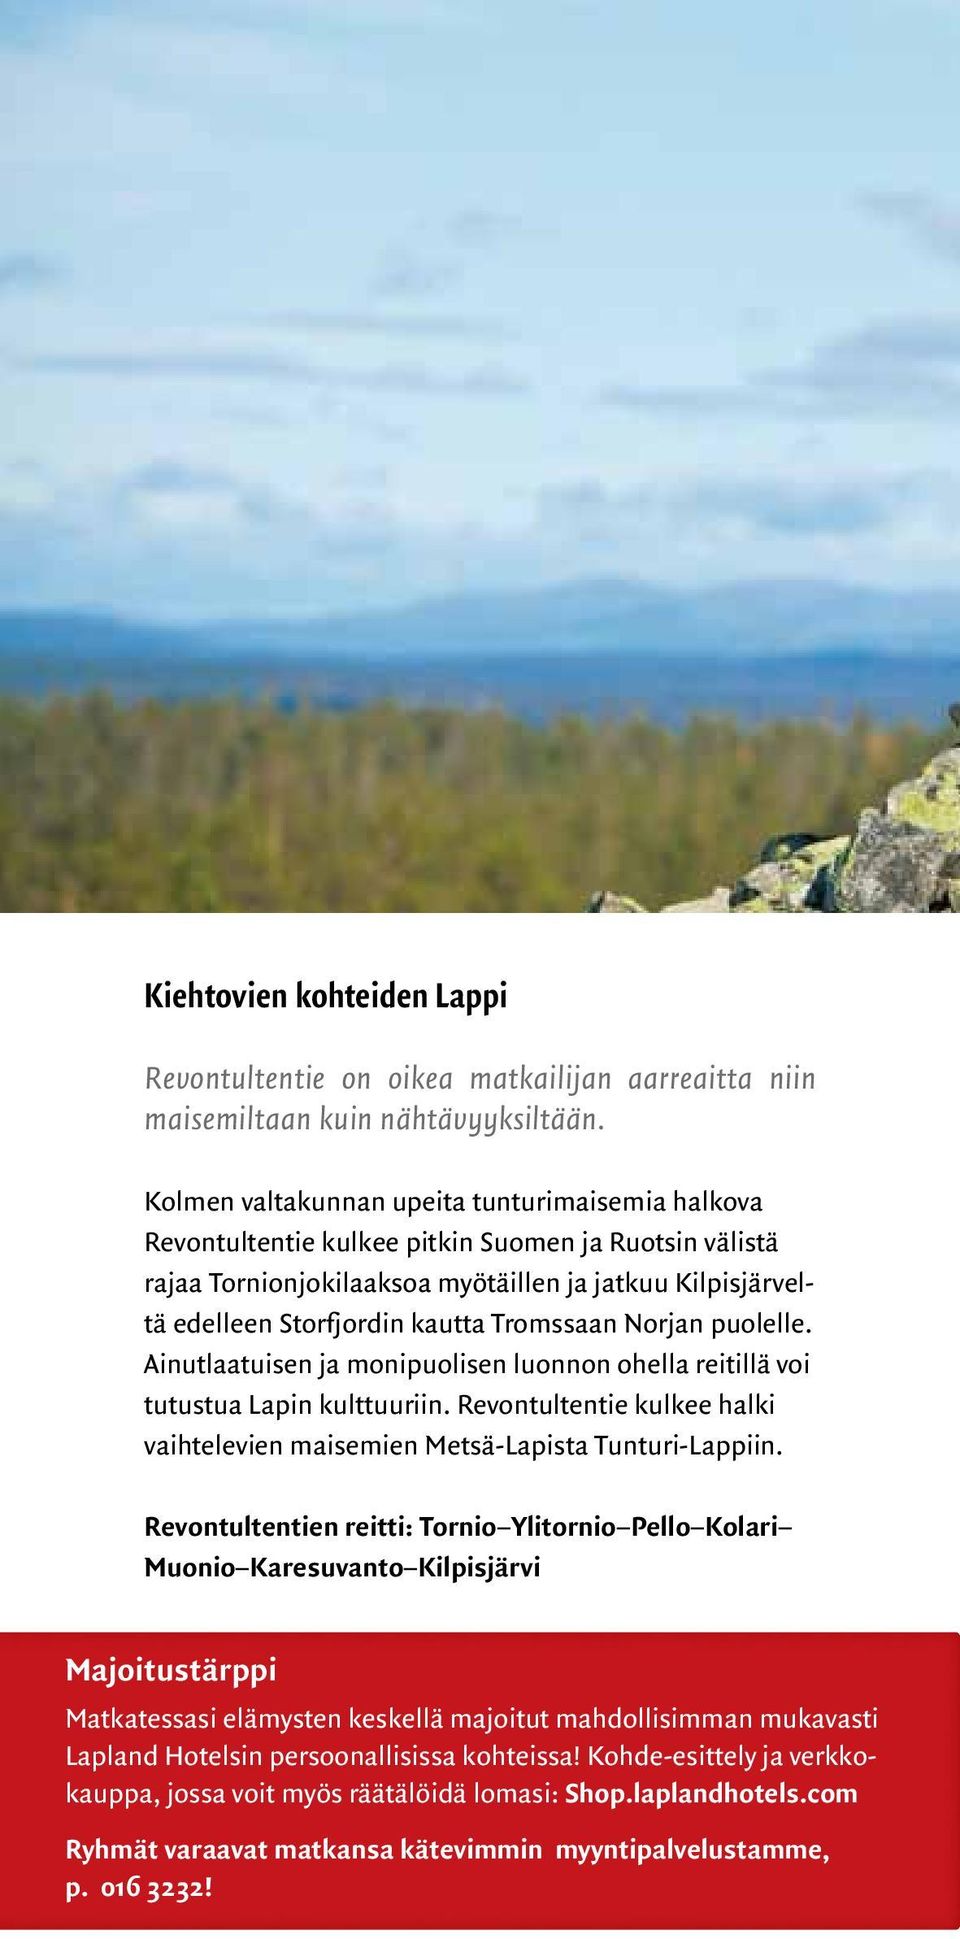 Tromssaan Norjan puolelle. Ainutlaatuisen ja monipuolisen luonnon ohella reitillä voi tutustua Lapin kulttuuriin. Revontultentie kulkee halki vaihtelevien maisemien Metsä-Lapista Tunturi-Lappiin.